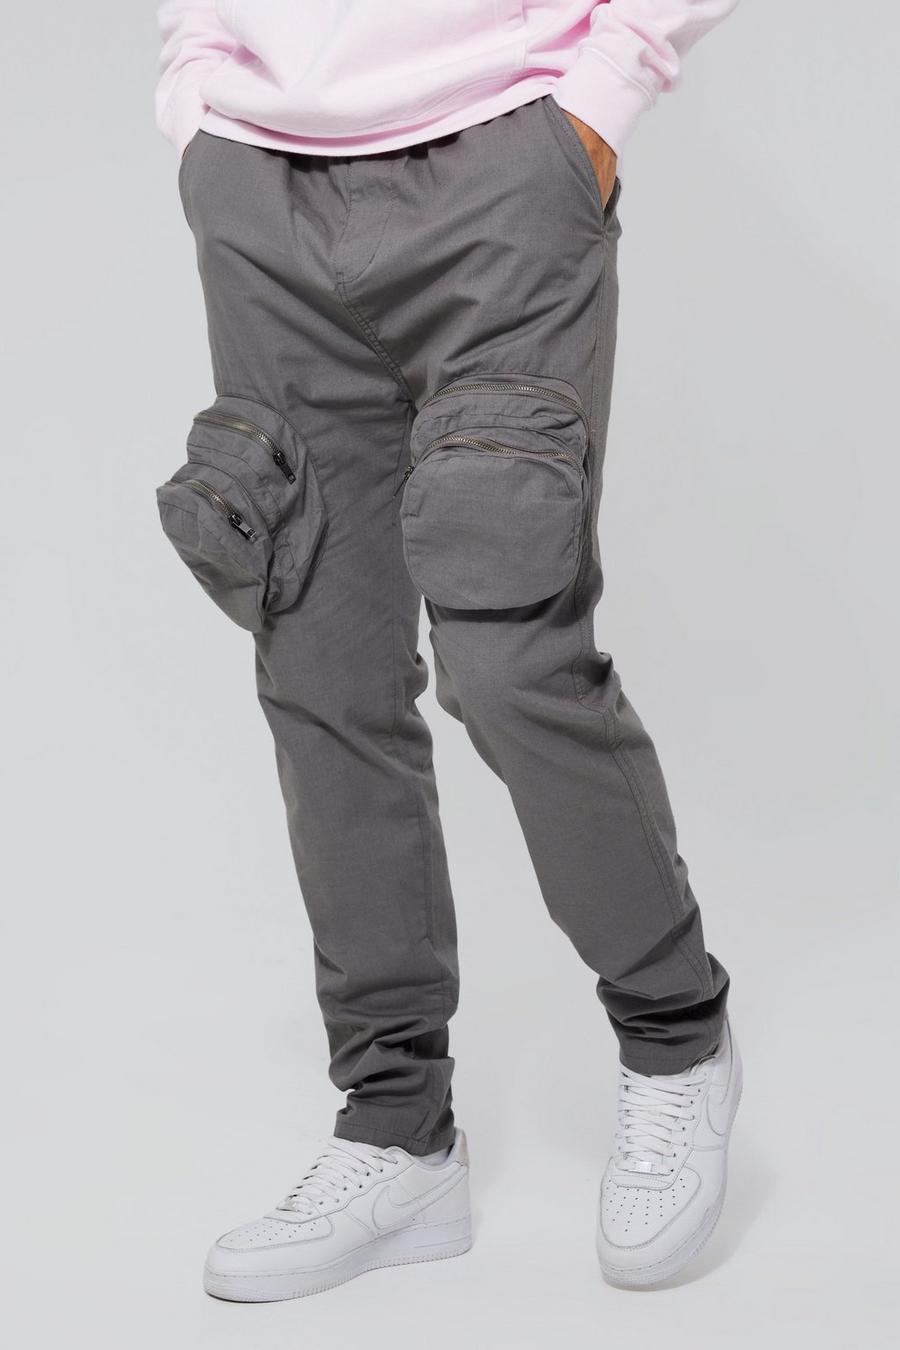 Pantalón Tall cargo ajustado elegante con cremallera 3D, Grey gris